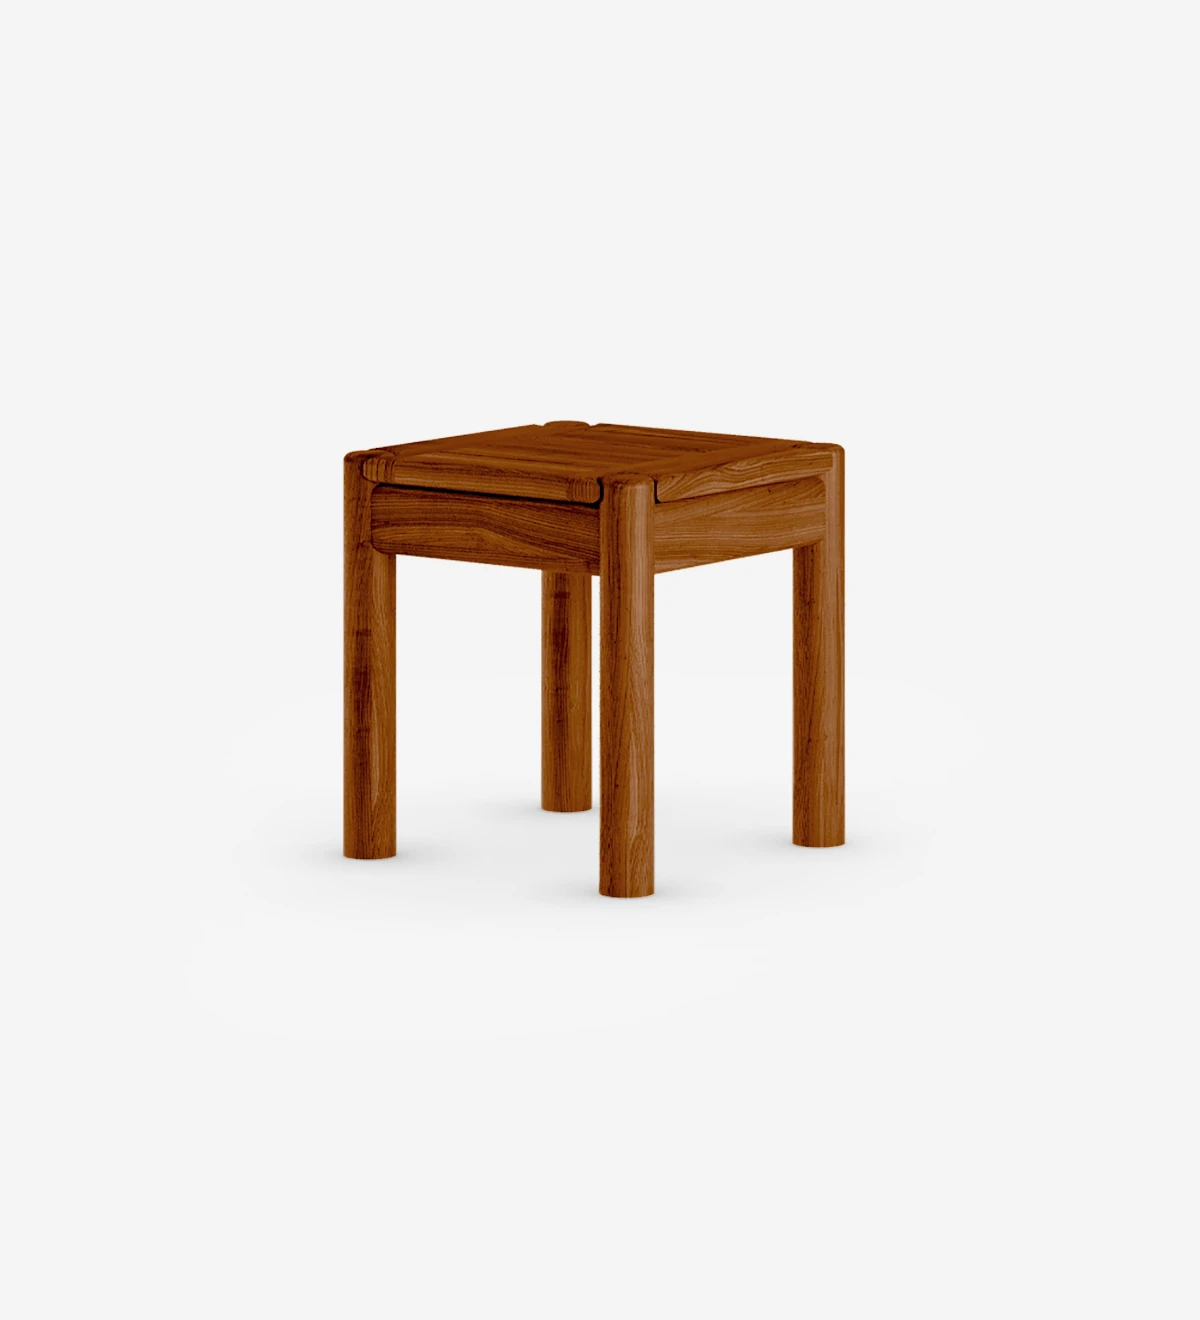 Mesa de apoio quadrada em madeira natural cor mel.